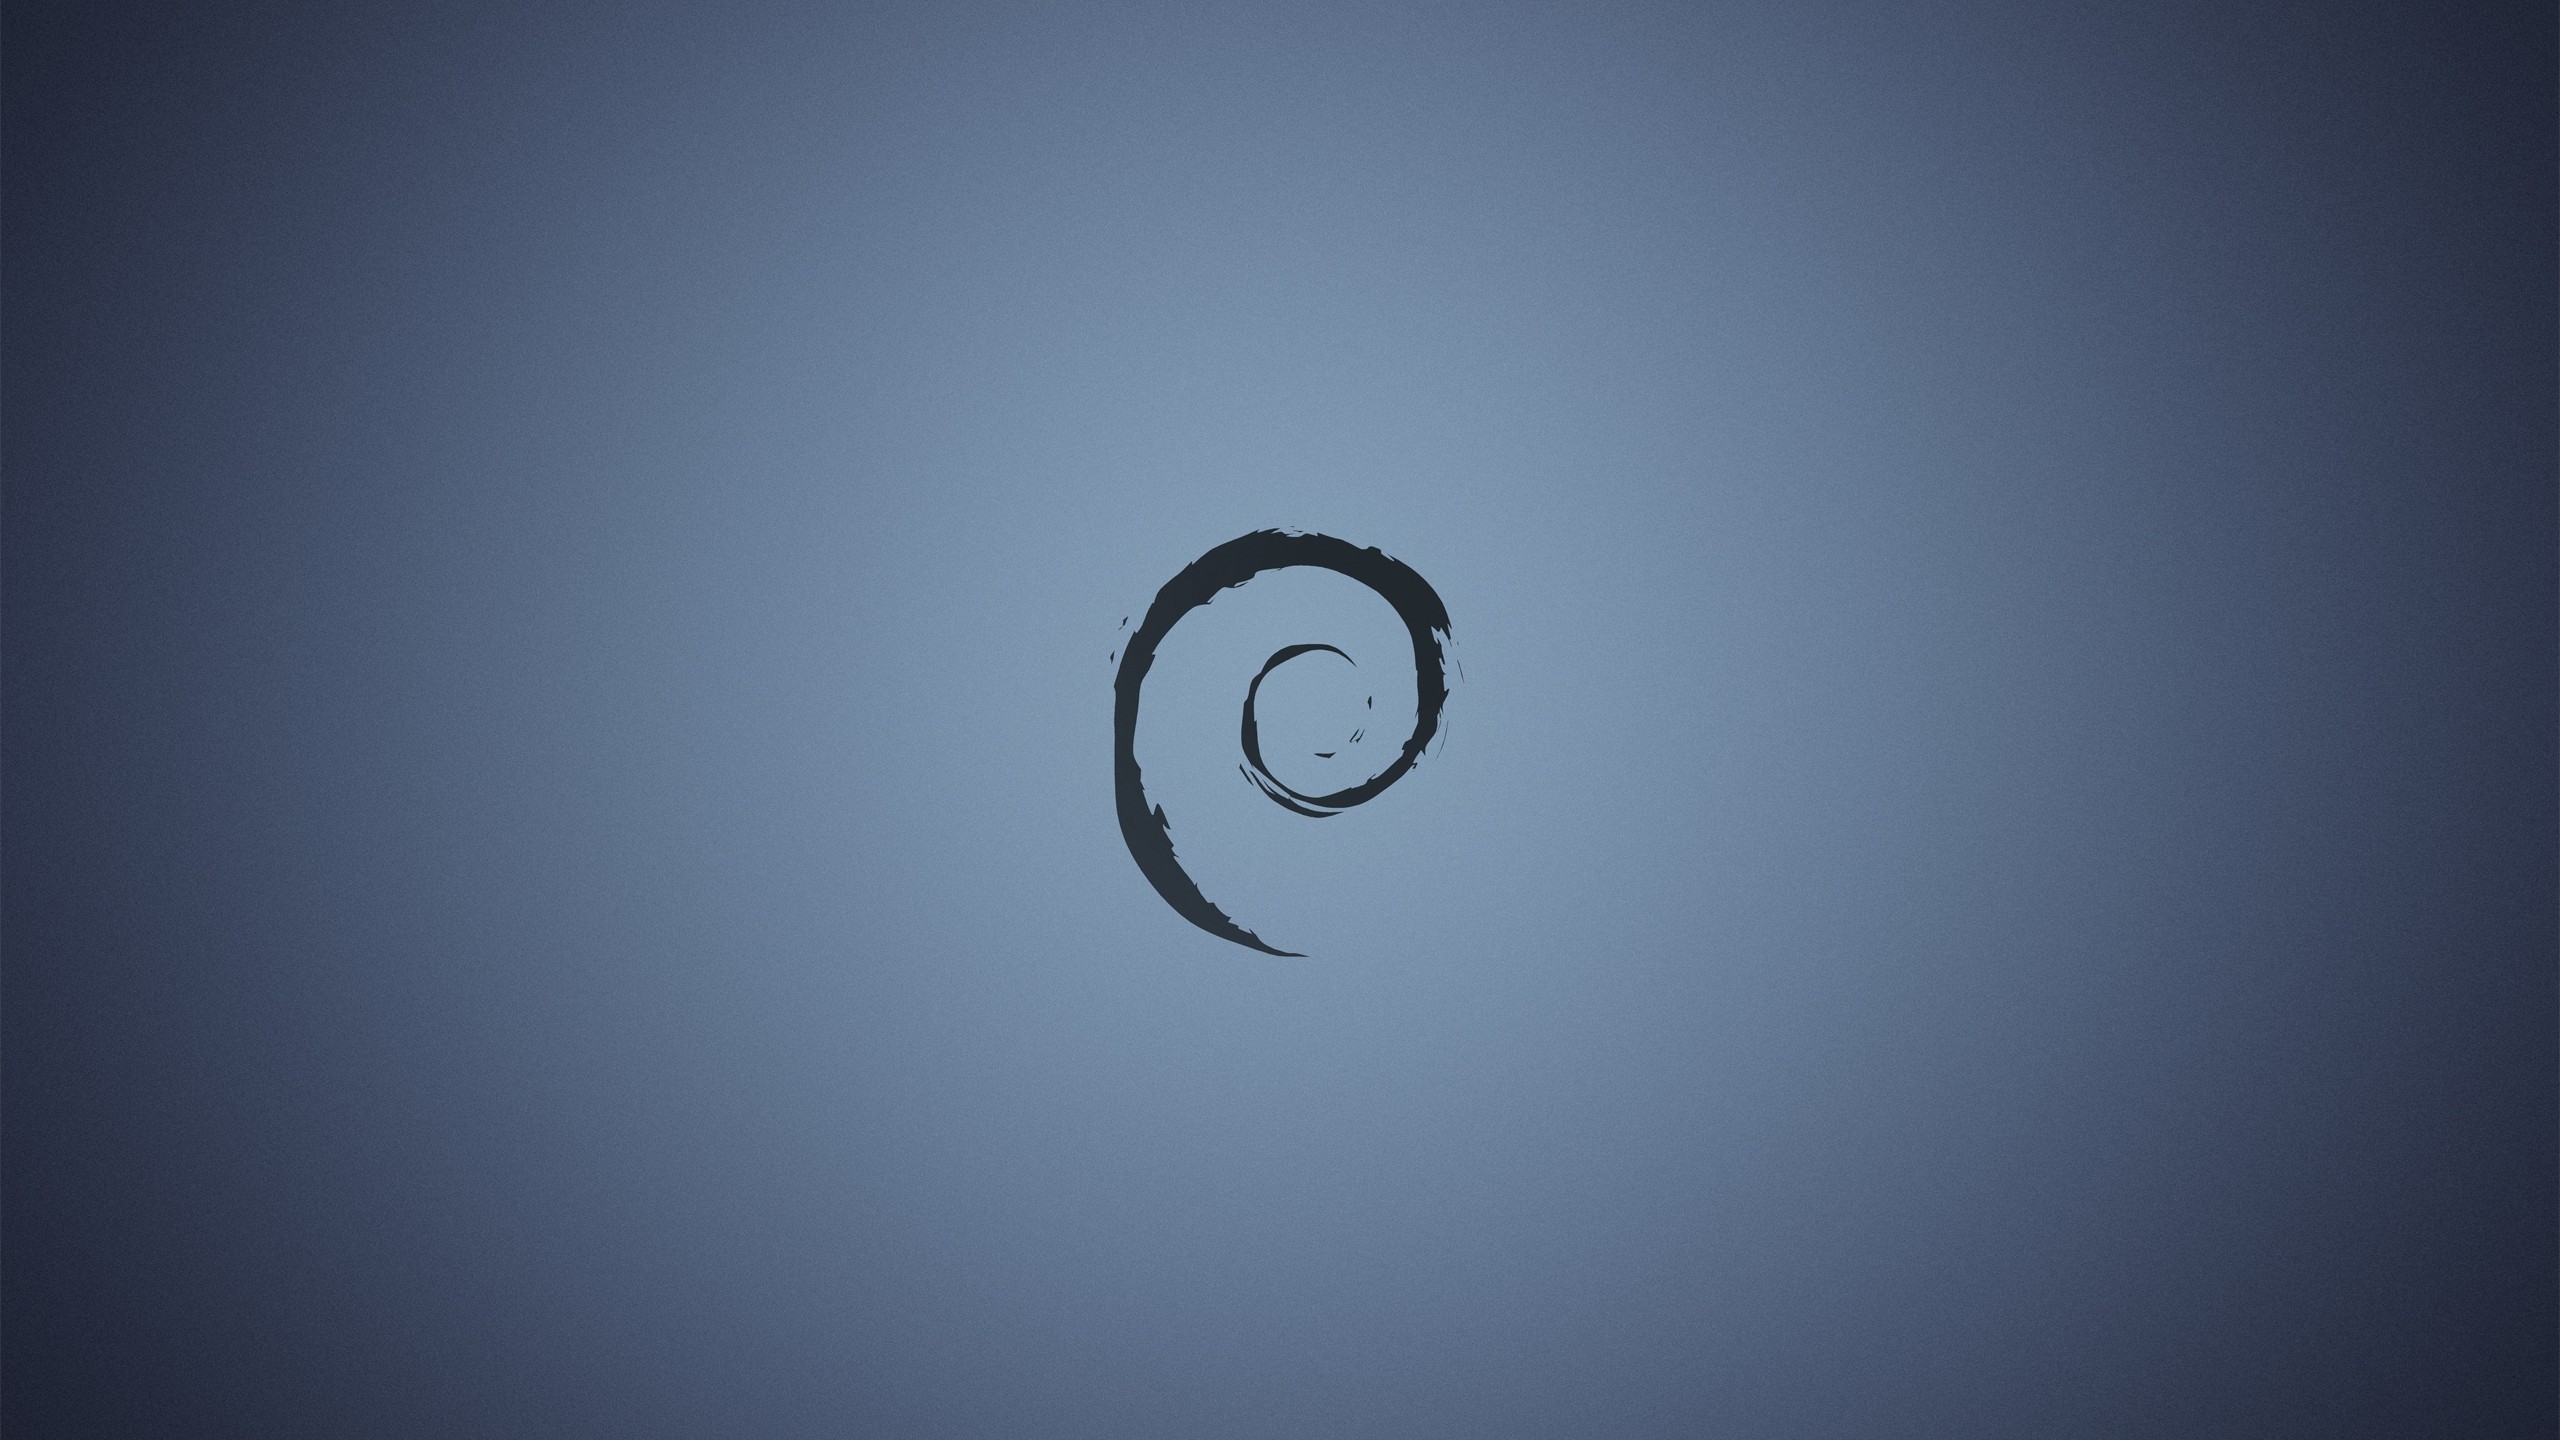 #debian, #linux, Wallpaper - Debian Gnu/linux , HD Wallpaper & Backgrounds